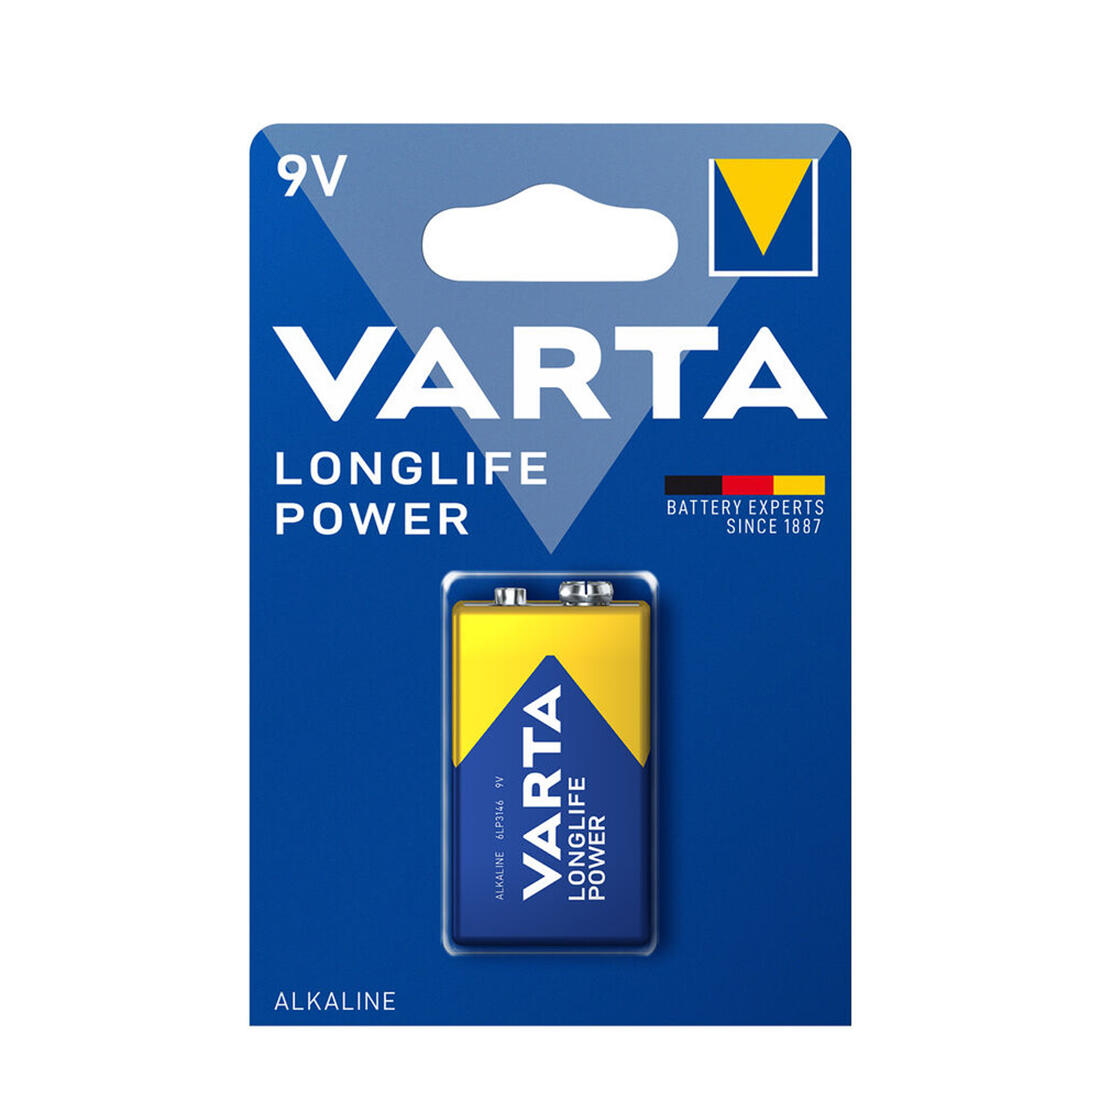 baterie 9V, 6LR61 alkalická Longlife Power VARTA 0.05 Kg MAXMIX Sklad14 129177 49